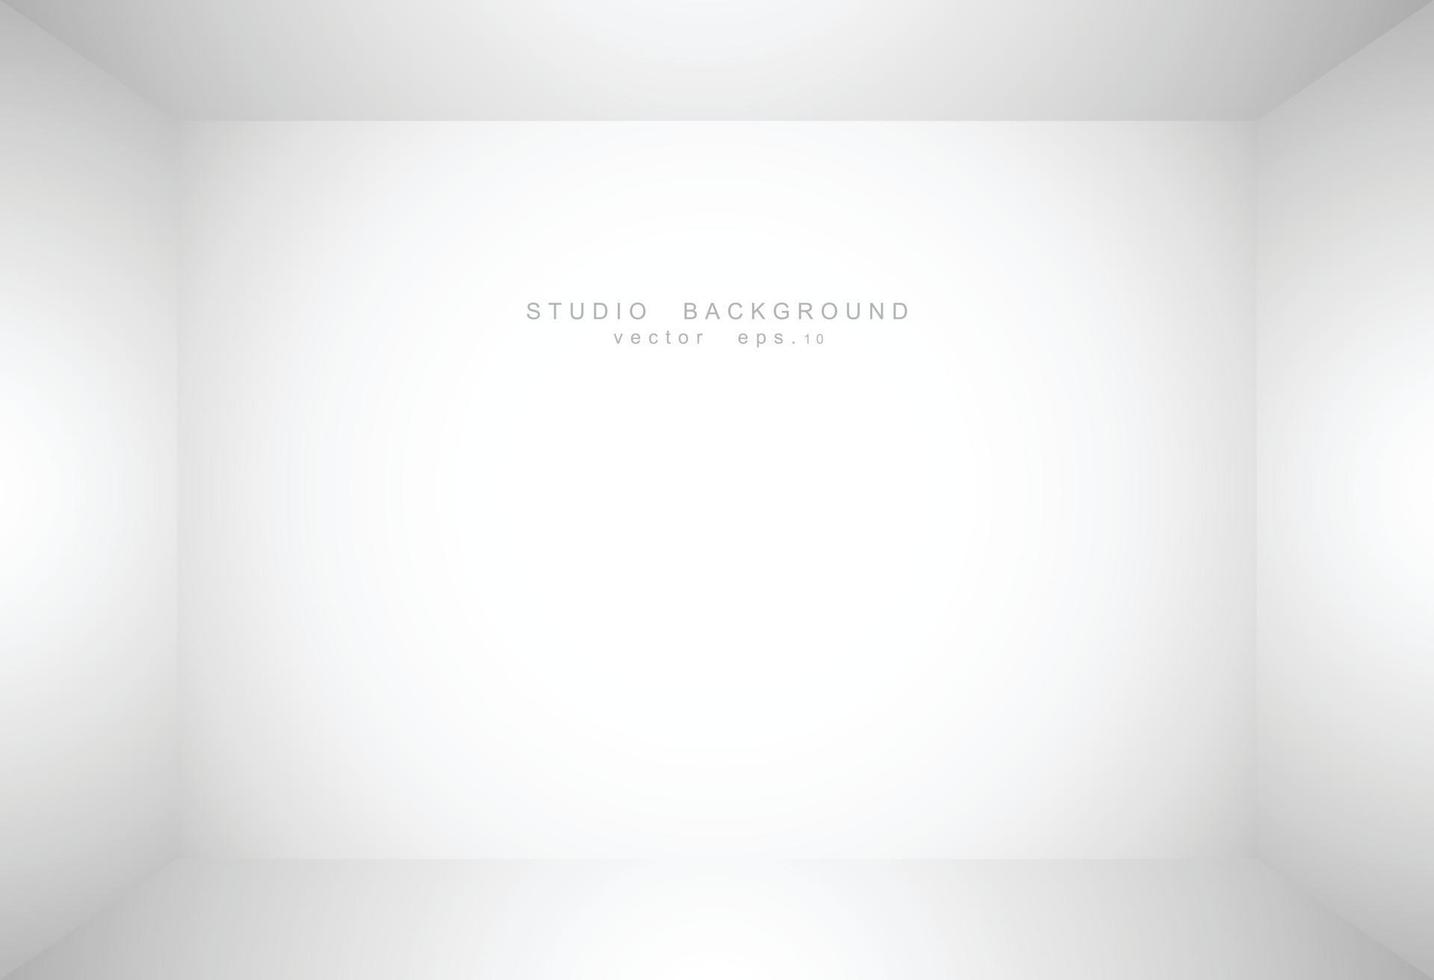 Empty studio room background vector